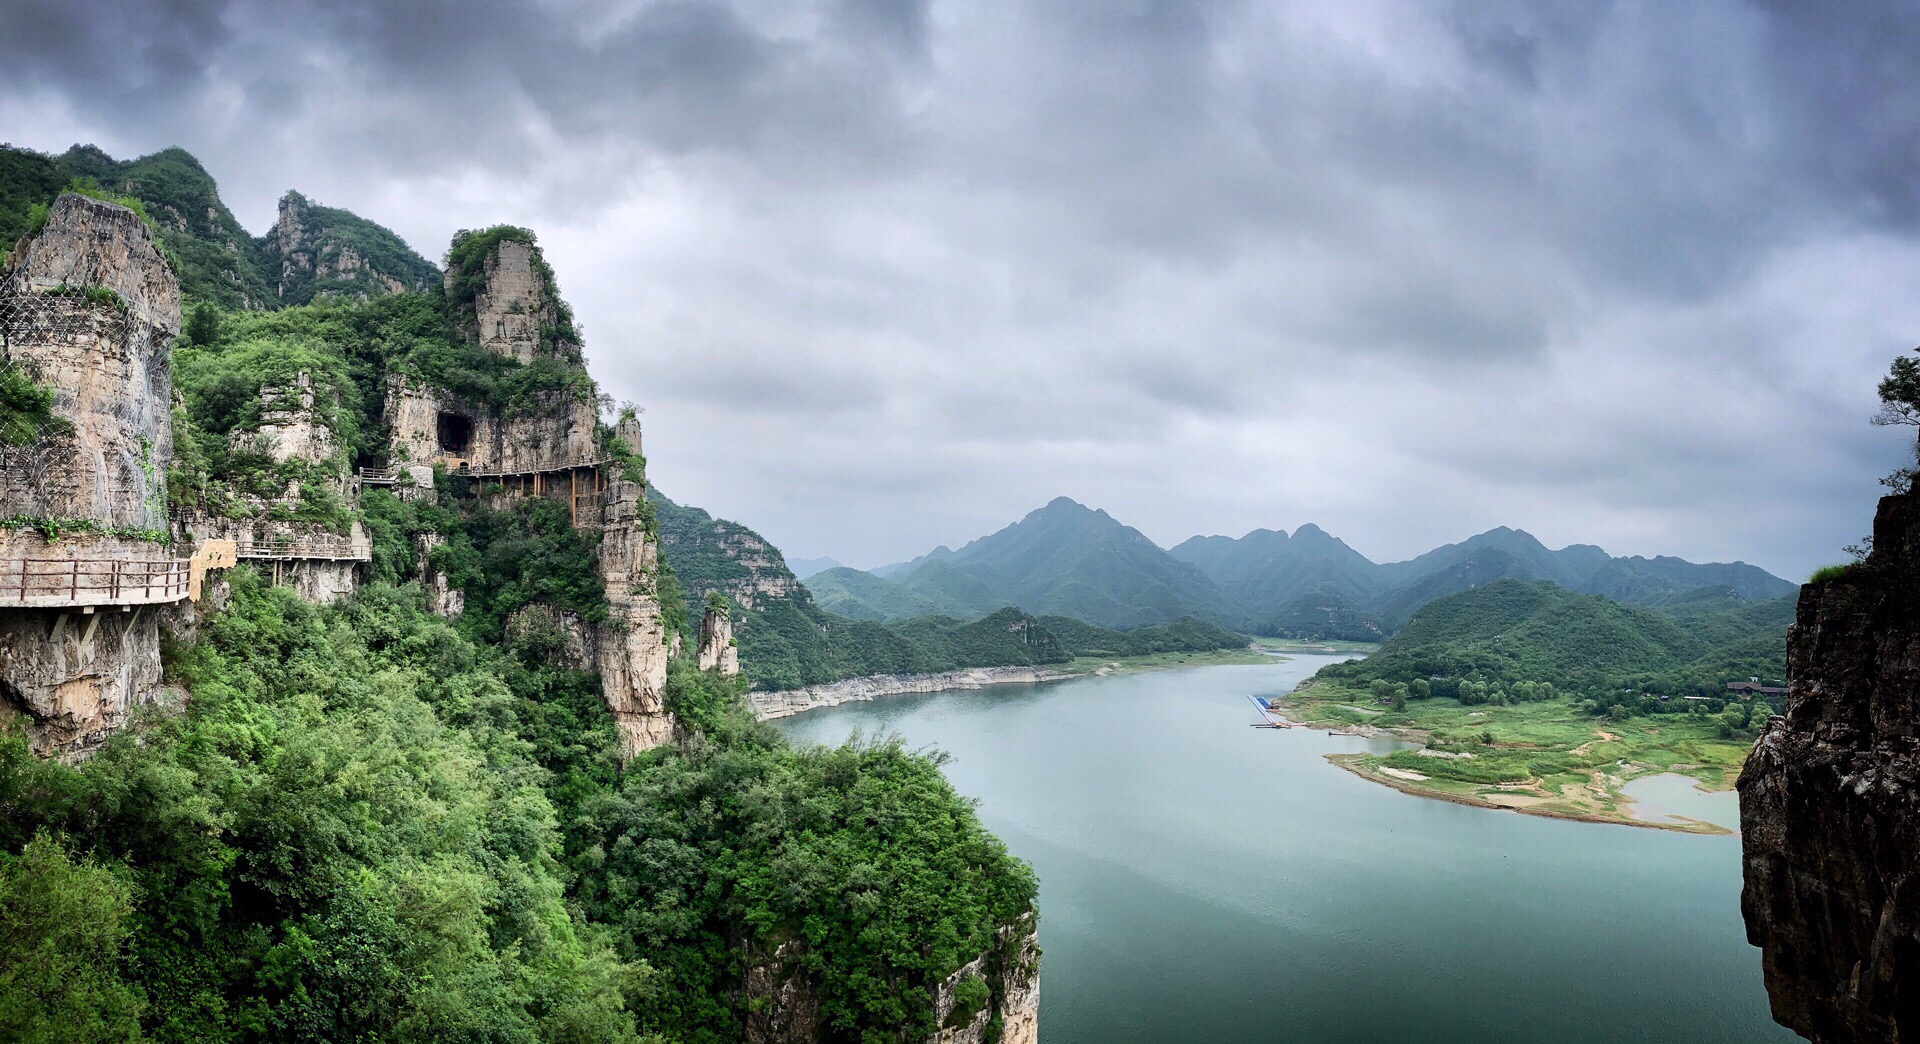 【易县】易水湖 北京周边自驾游好去处 趁这个周末 开车去了趟易水湖和太行古镇 车程大概2个小时 易水